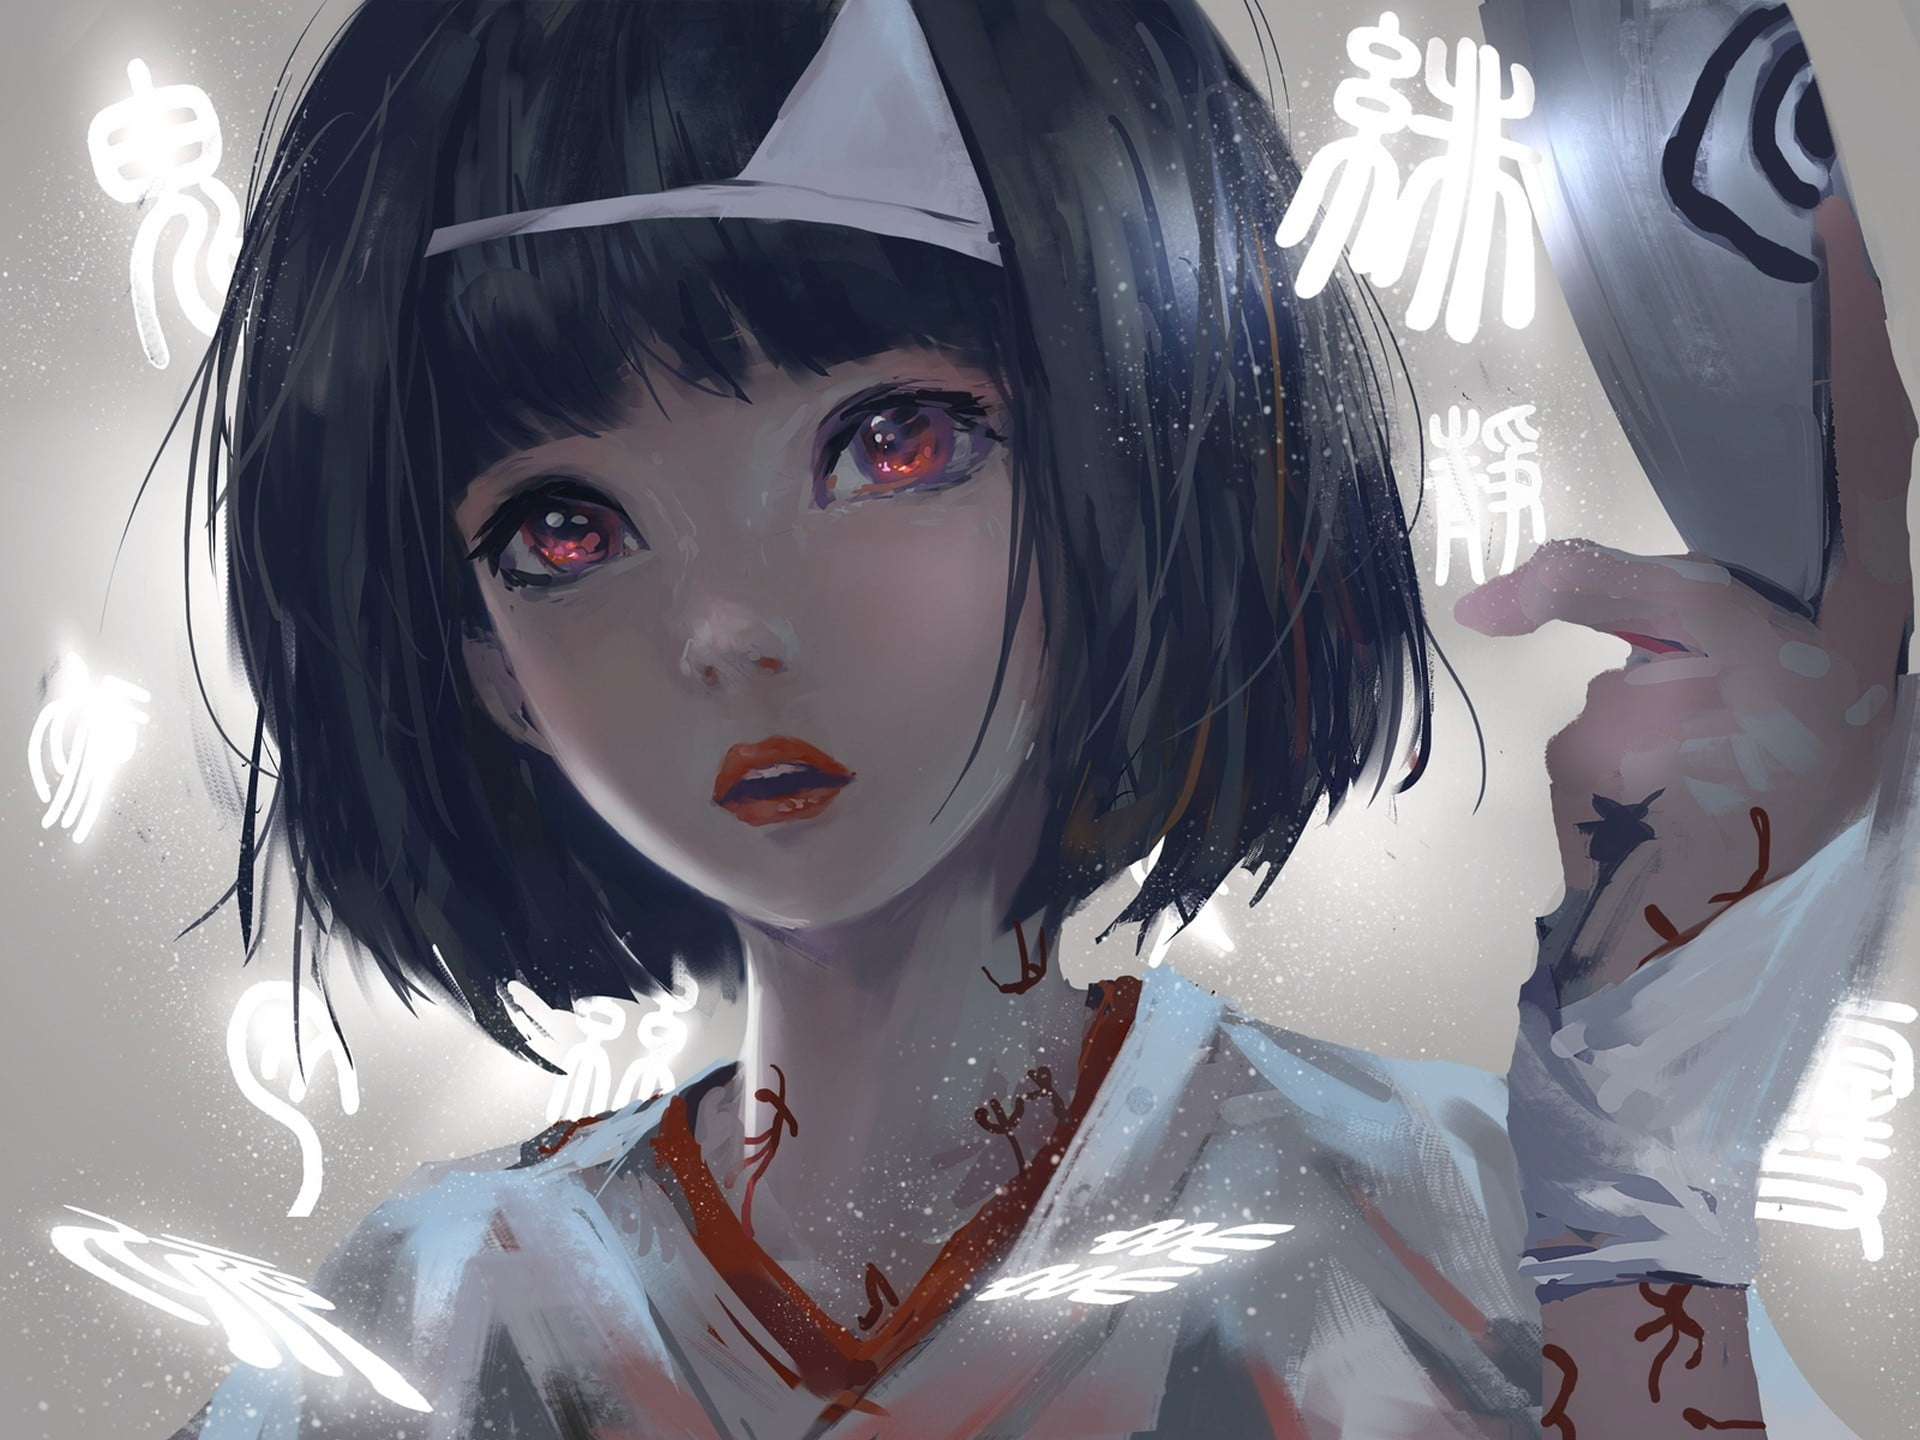 Female anime character in white top wallpaper, black hair, short hair